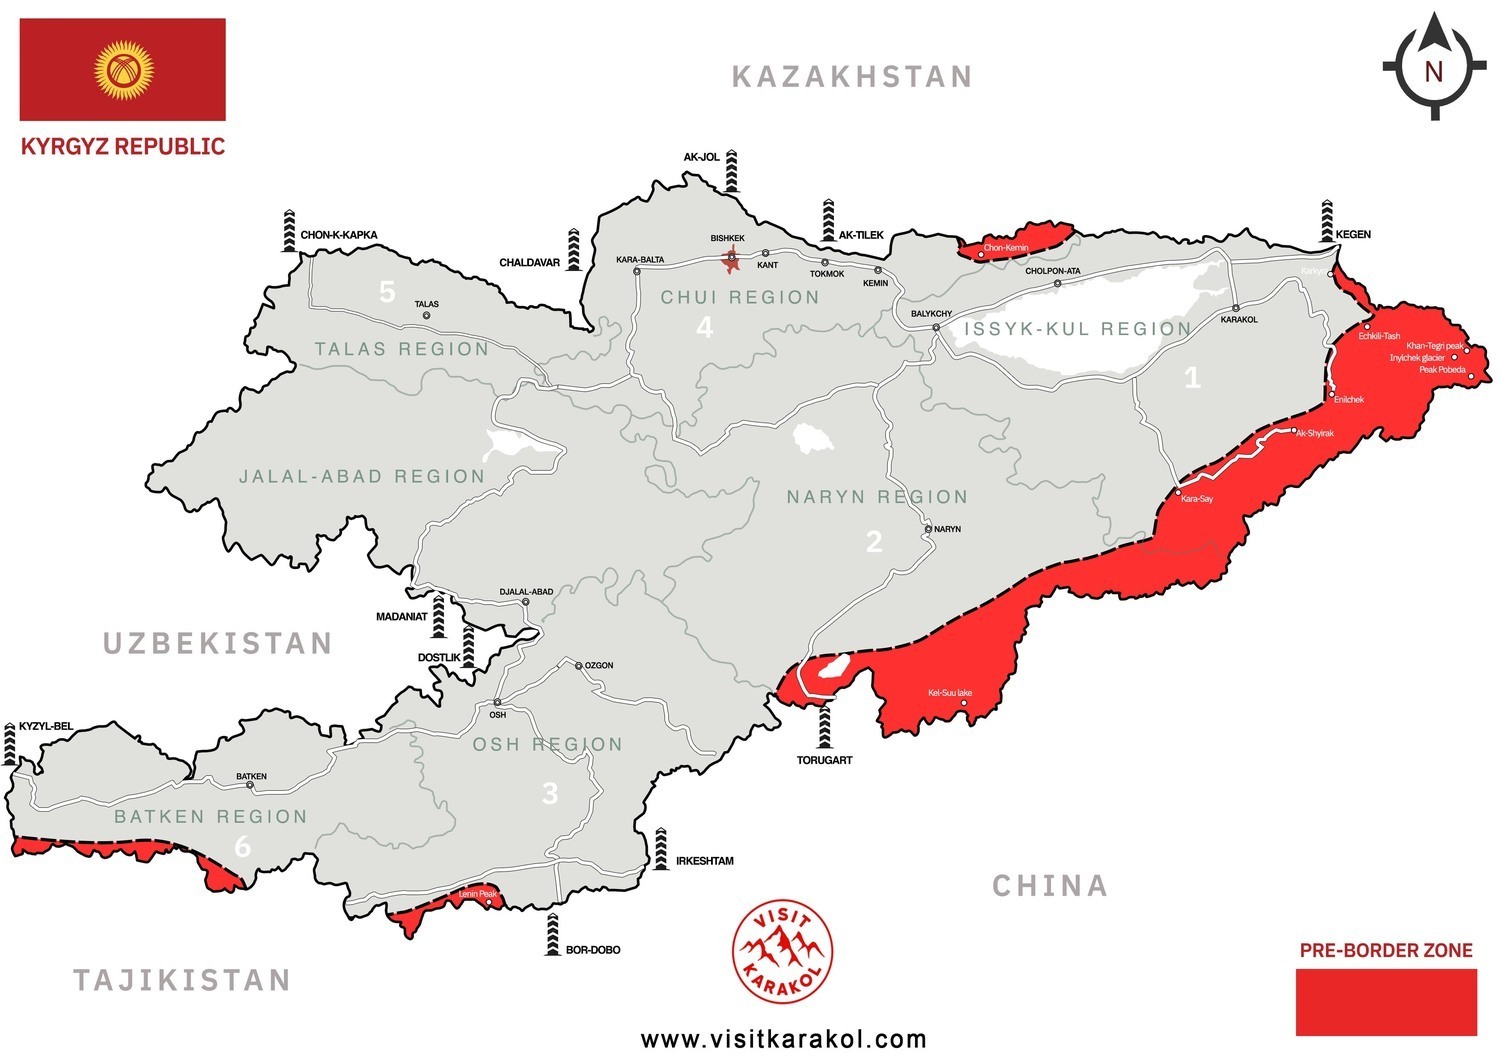 Map of pre-border zones in Kyrgyzstan 